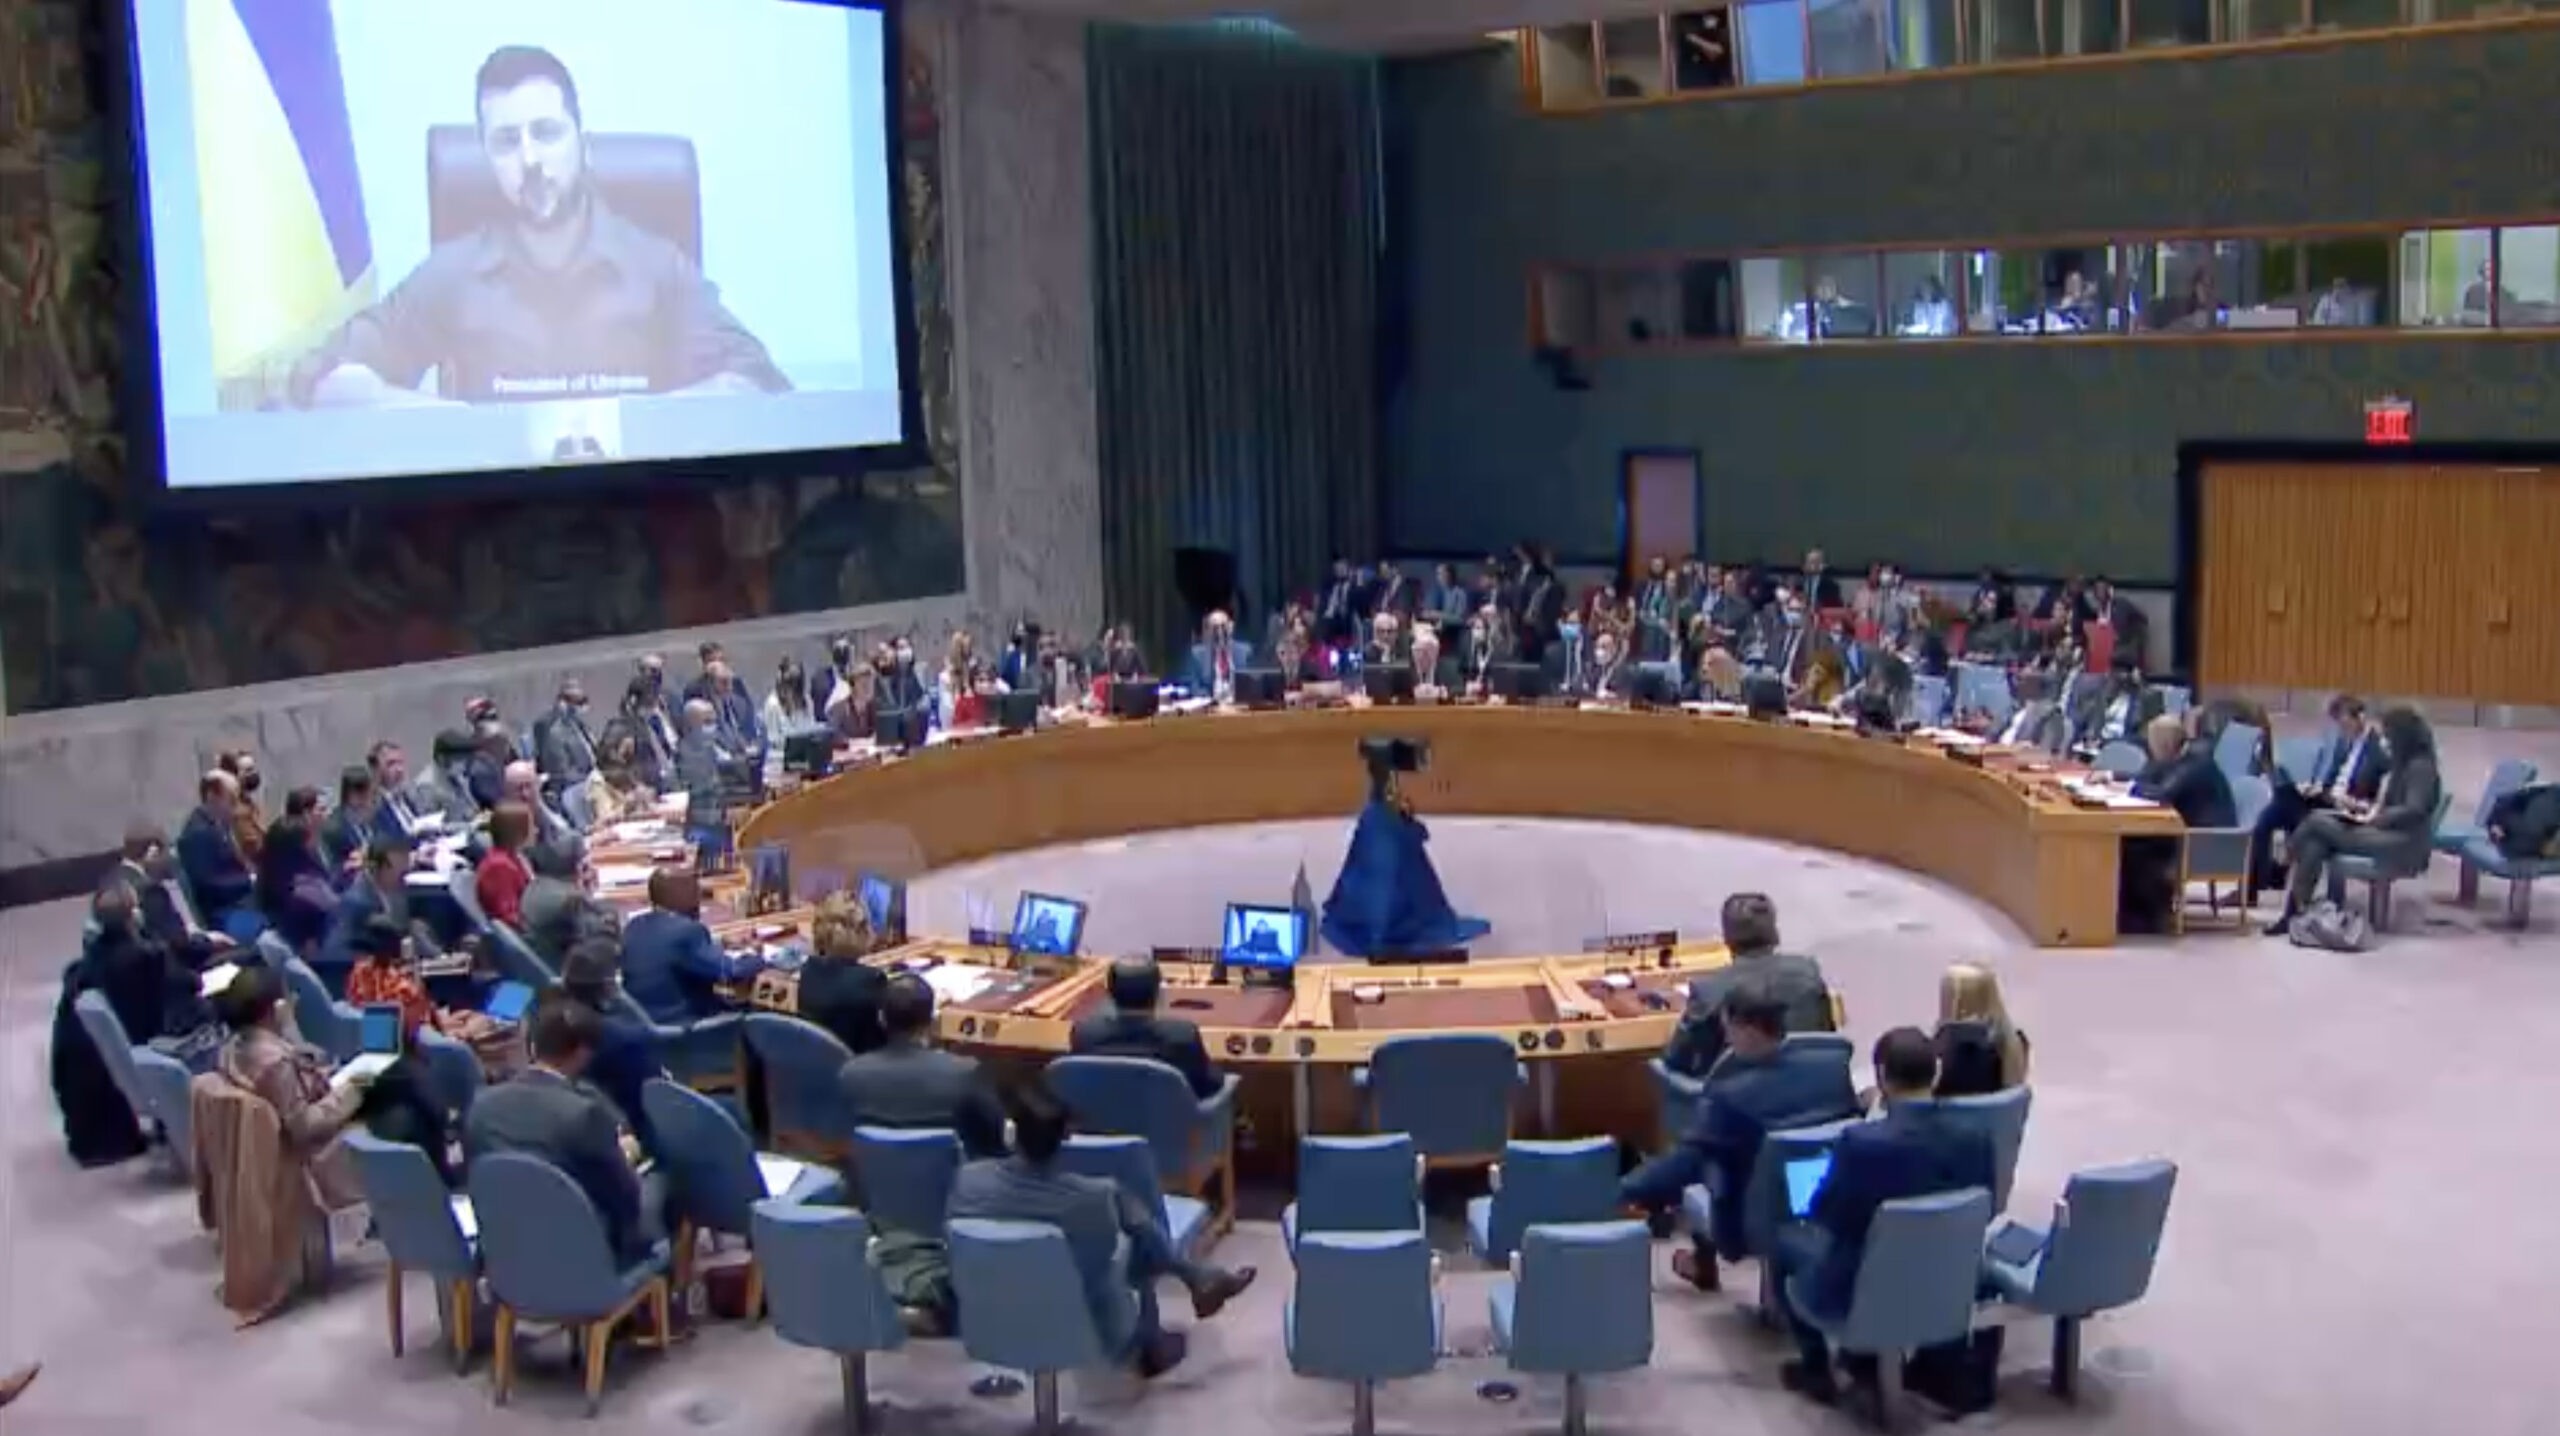 ولودیمیر زلنسکی رئیس جمهور اوکراین در شورای امنیت سازمان ملل سخنرانی کرد